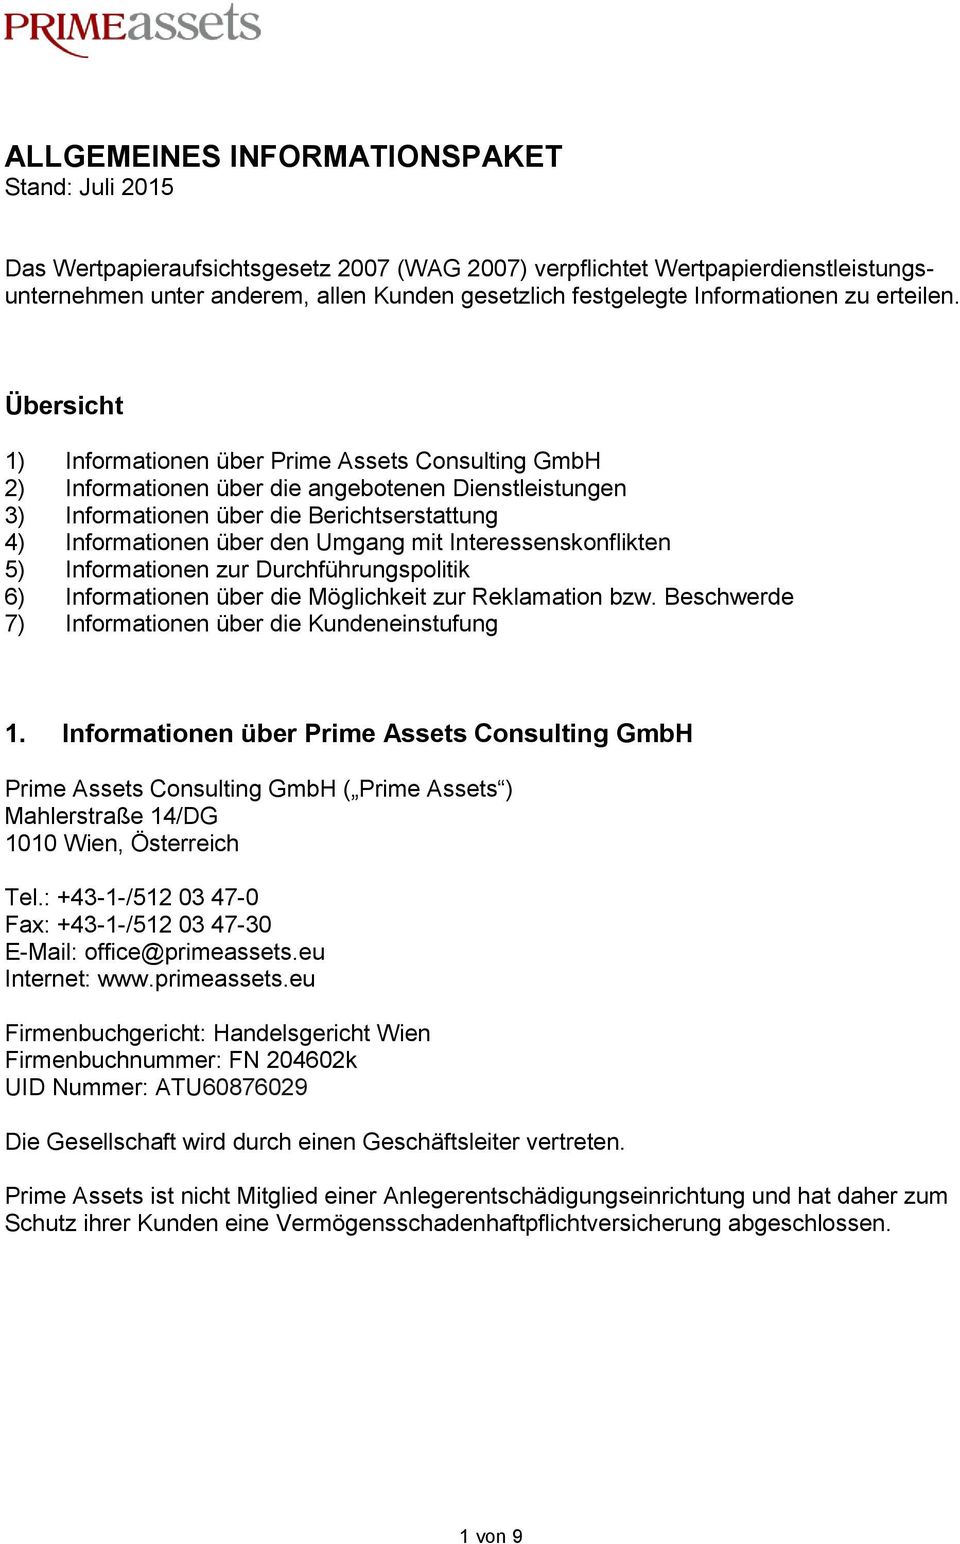 Übersicht 1) Informationen über Prime Assets Consulting GmbH 2) Informationen über die angebotenen Dienstleistungen 3) Informationen über die Berichtserstattung 4) Informationen über den Umgang mit